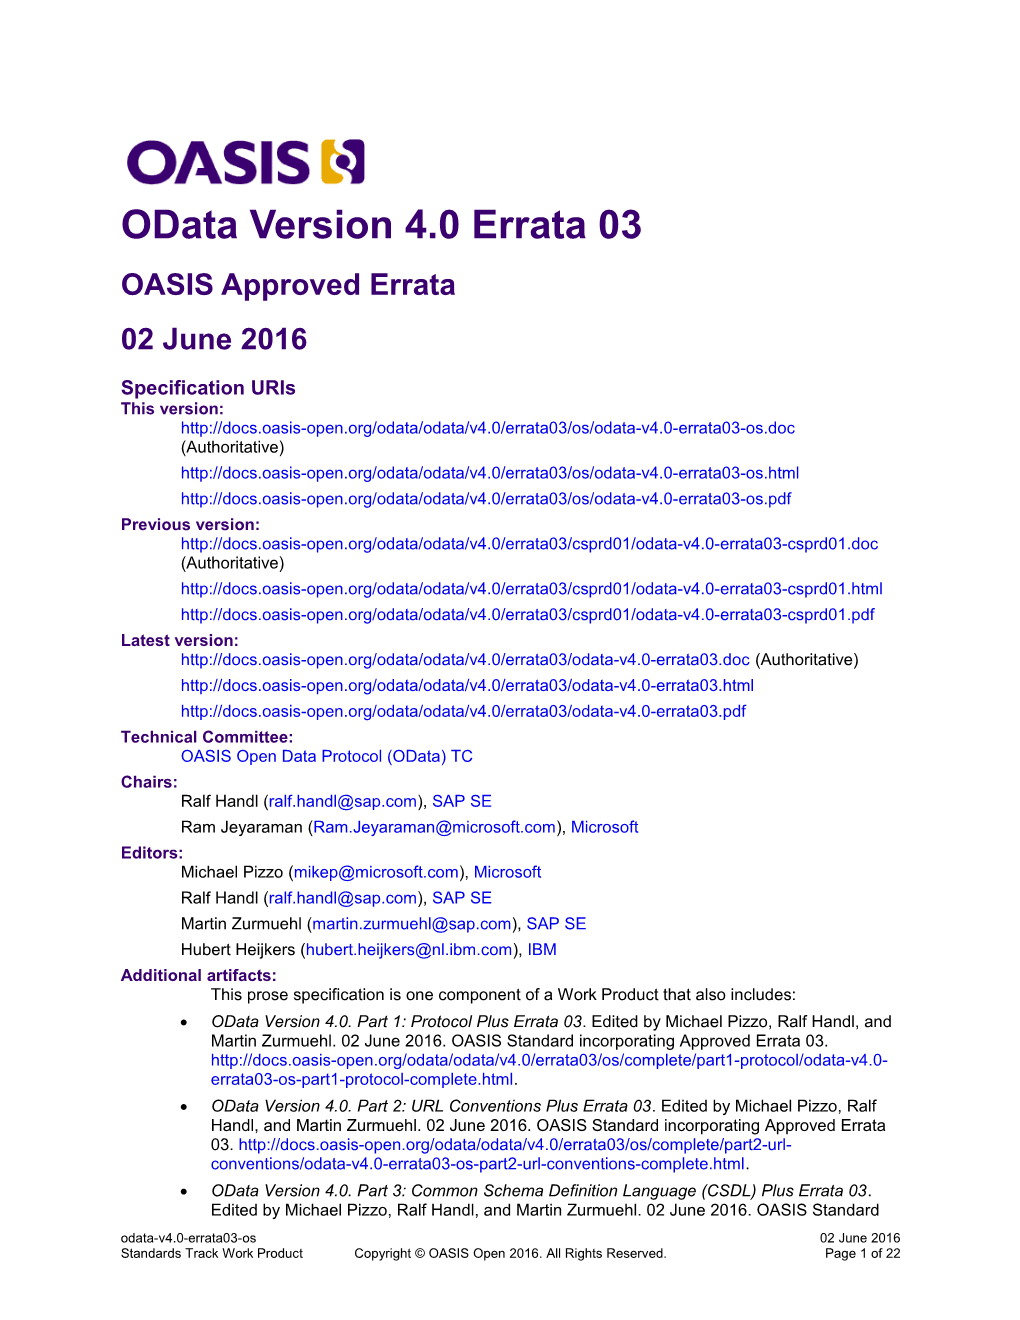 Odata Version 4.0 Errata 03